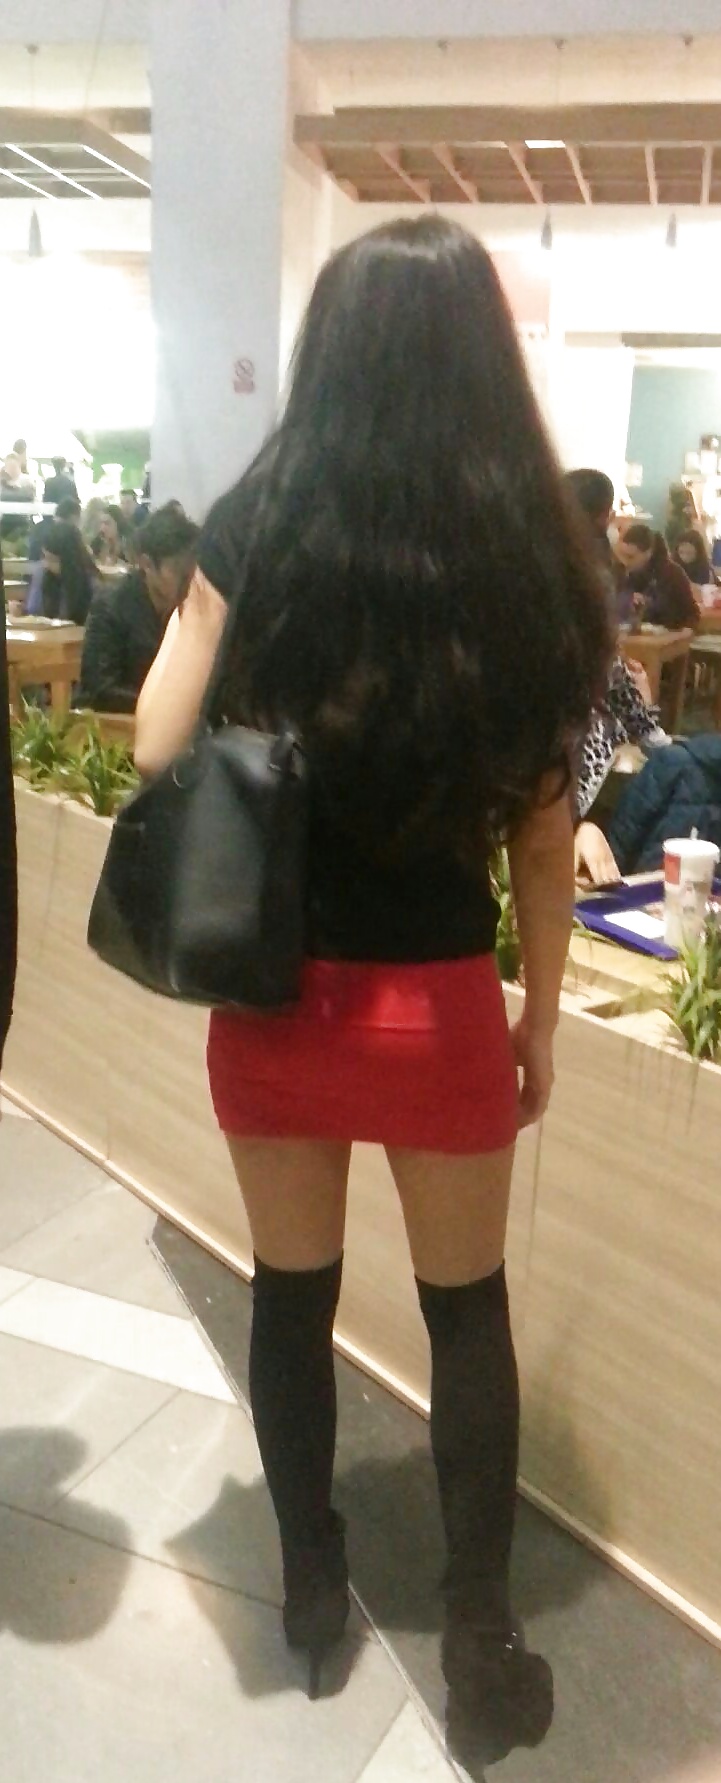 Spy mini skirt sexy teens in mall romanian #39540217